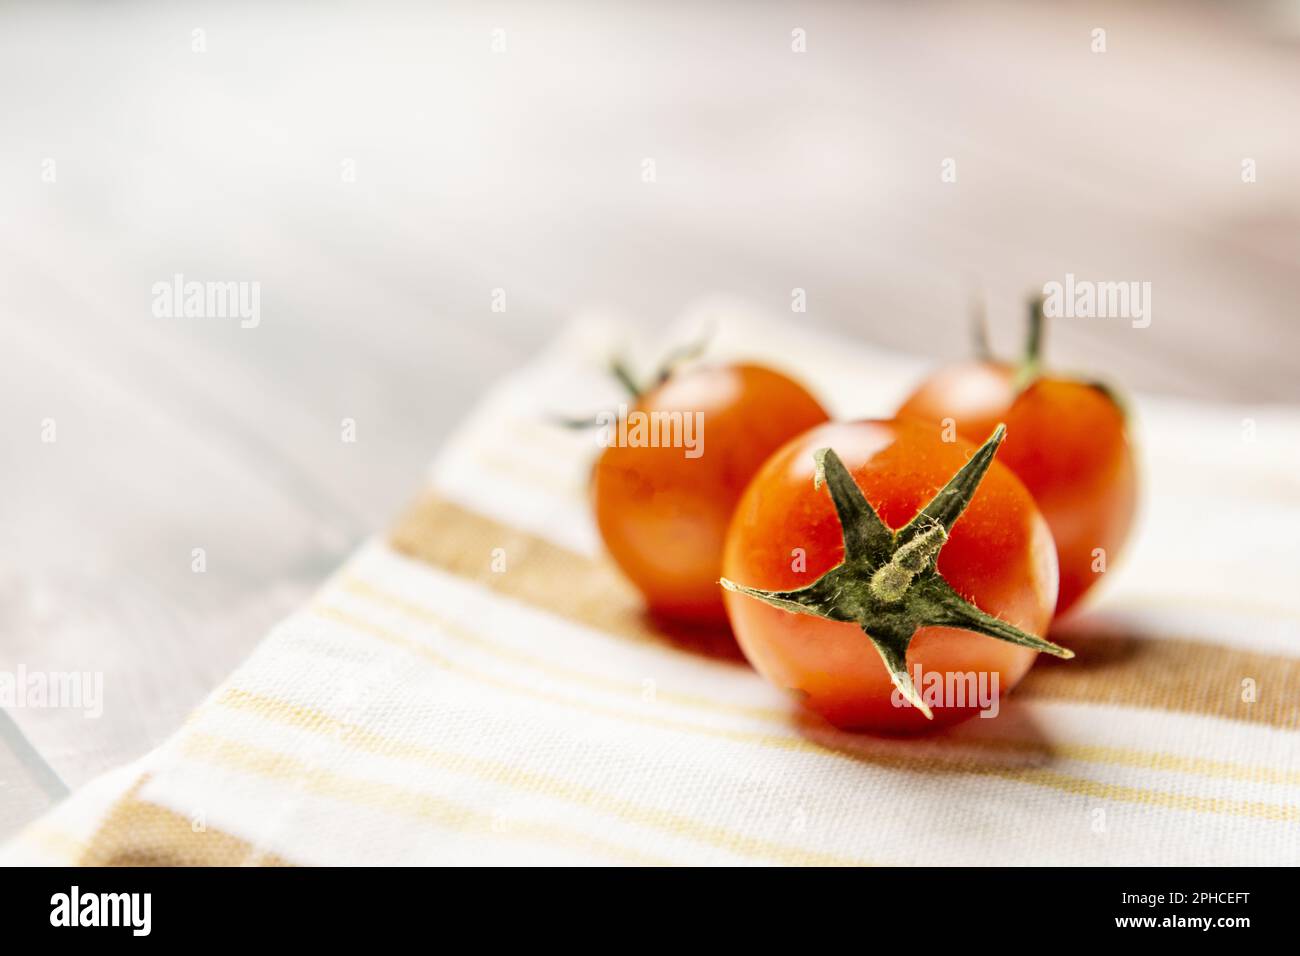 Pomodoro ciliegia, la sua forma può essere sferica o leggermente oblunga. Di solito è rosso, anche se ci sono varietà arancione, giallo, verde e nero Foto Stock